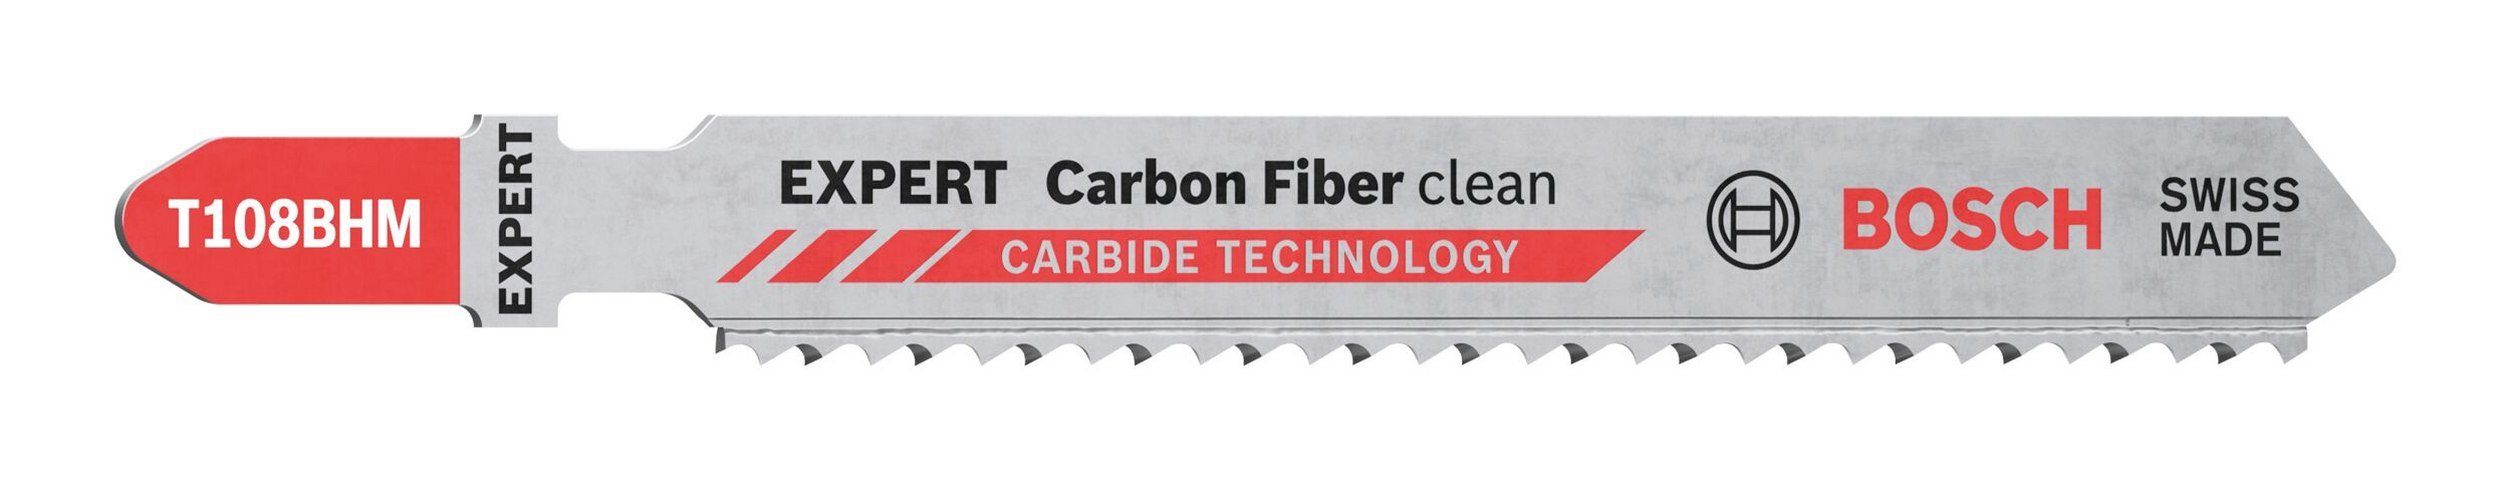 BOSCH Stichsägeblatt Expert Carbon Fiber Clean EXPERT T 108 BHM VE (3 Stück), À Carbon Fiber Clean